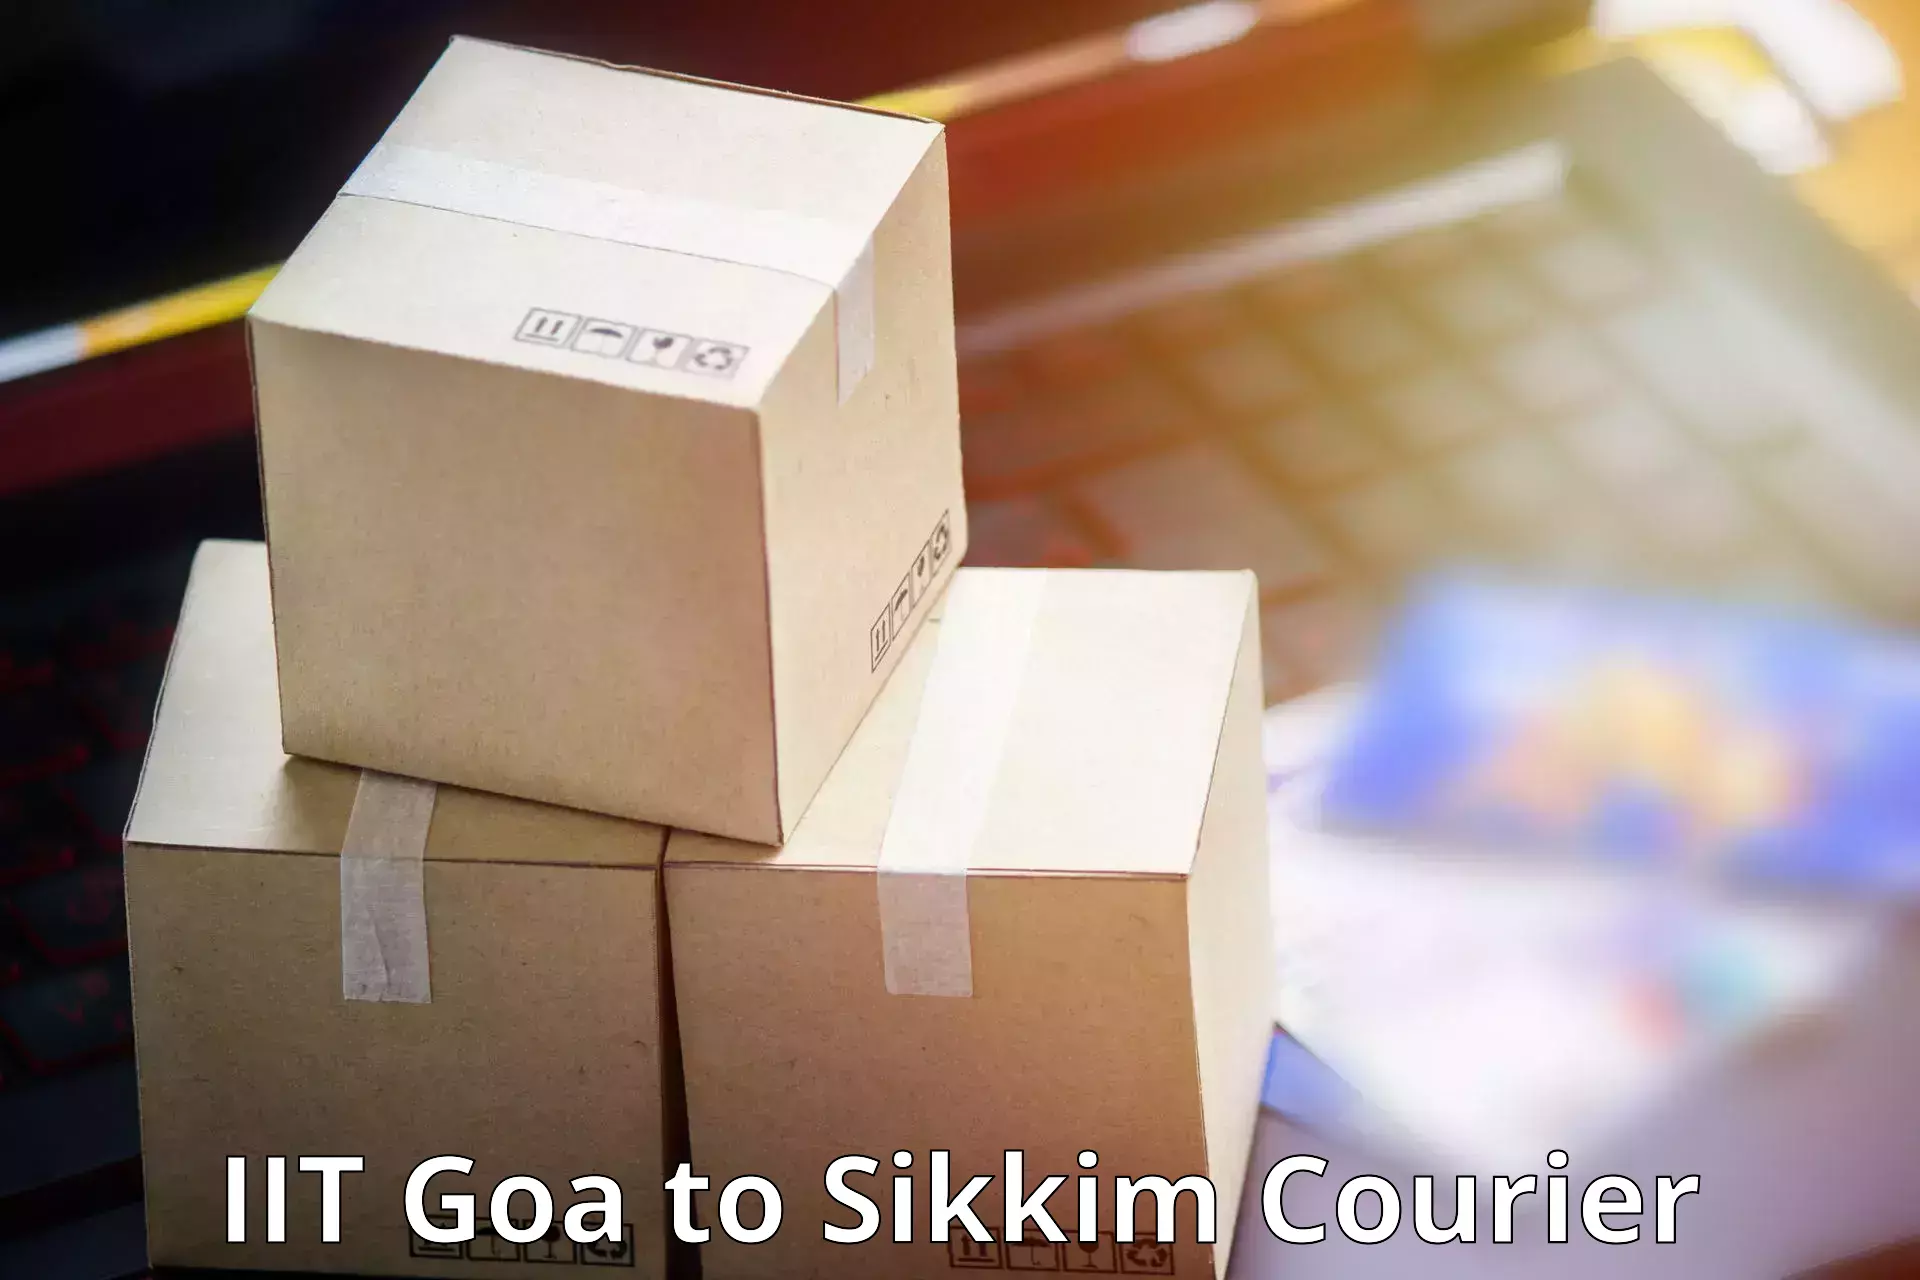 24/7 courier service IIT Goa to Gangtok